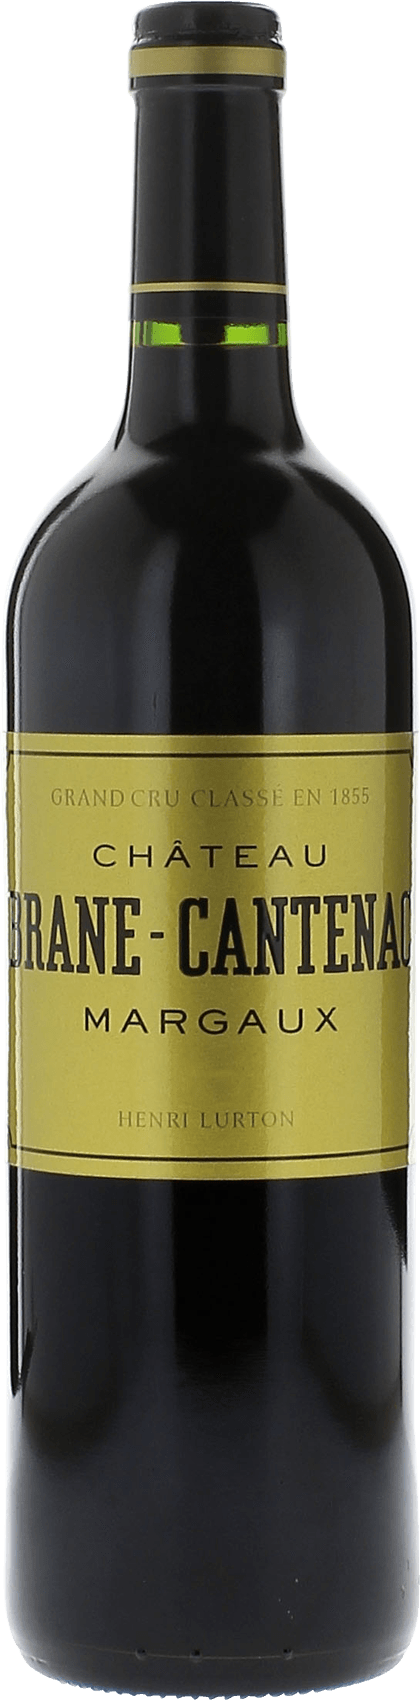 Brane cantenac 1979 2me Grand cru class Margaux, Bordeaux rouge